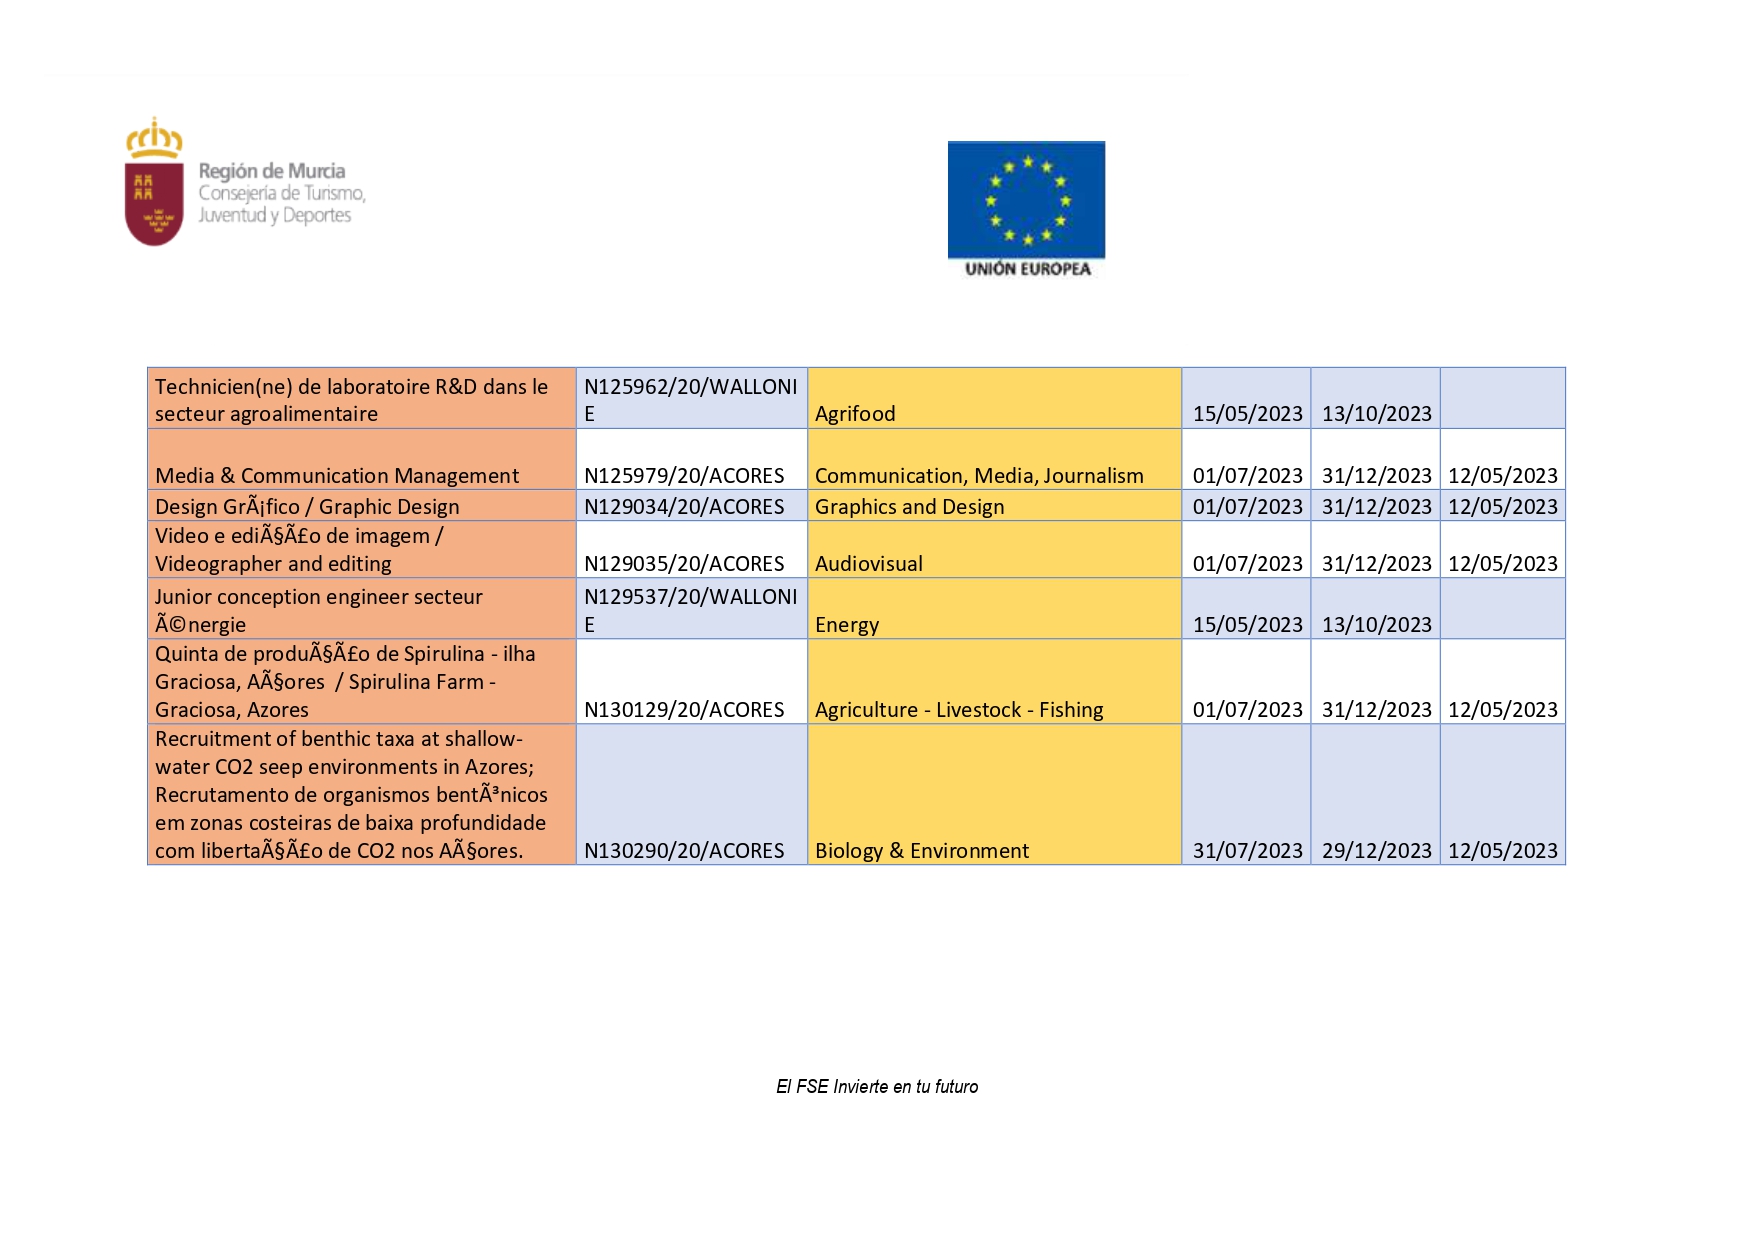 PROGRAMA DE PRÁCTICAS LABORALES REMUNERADAS EN EUROPA (Imagen 9)